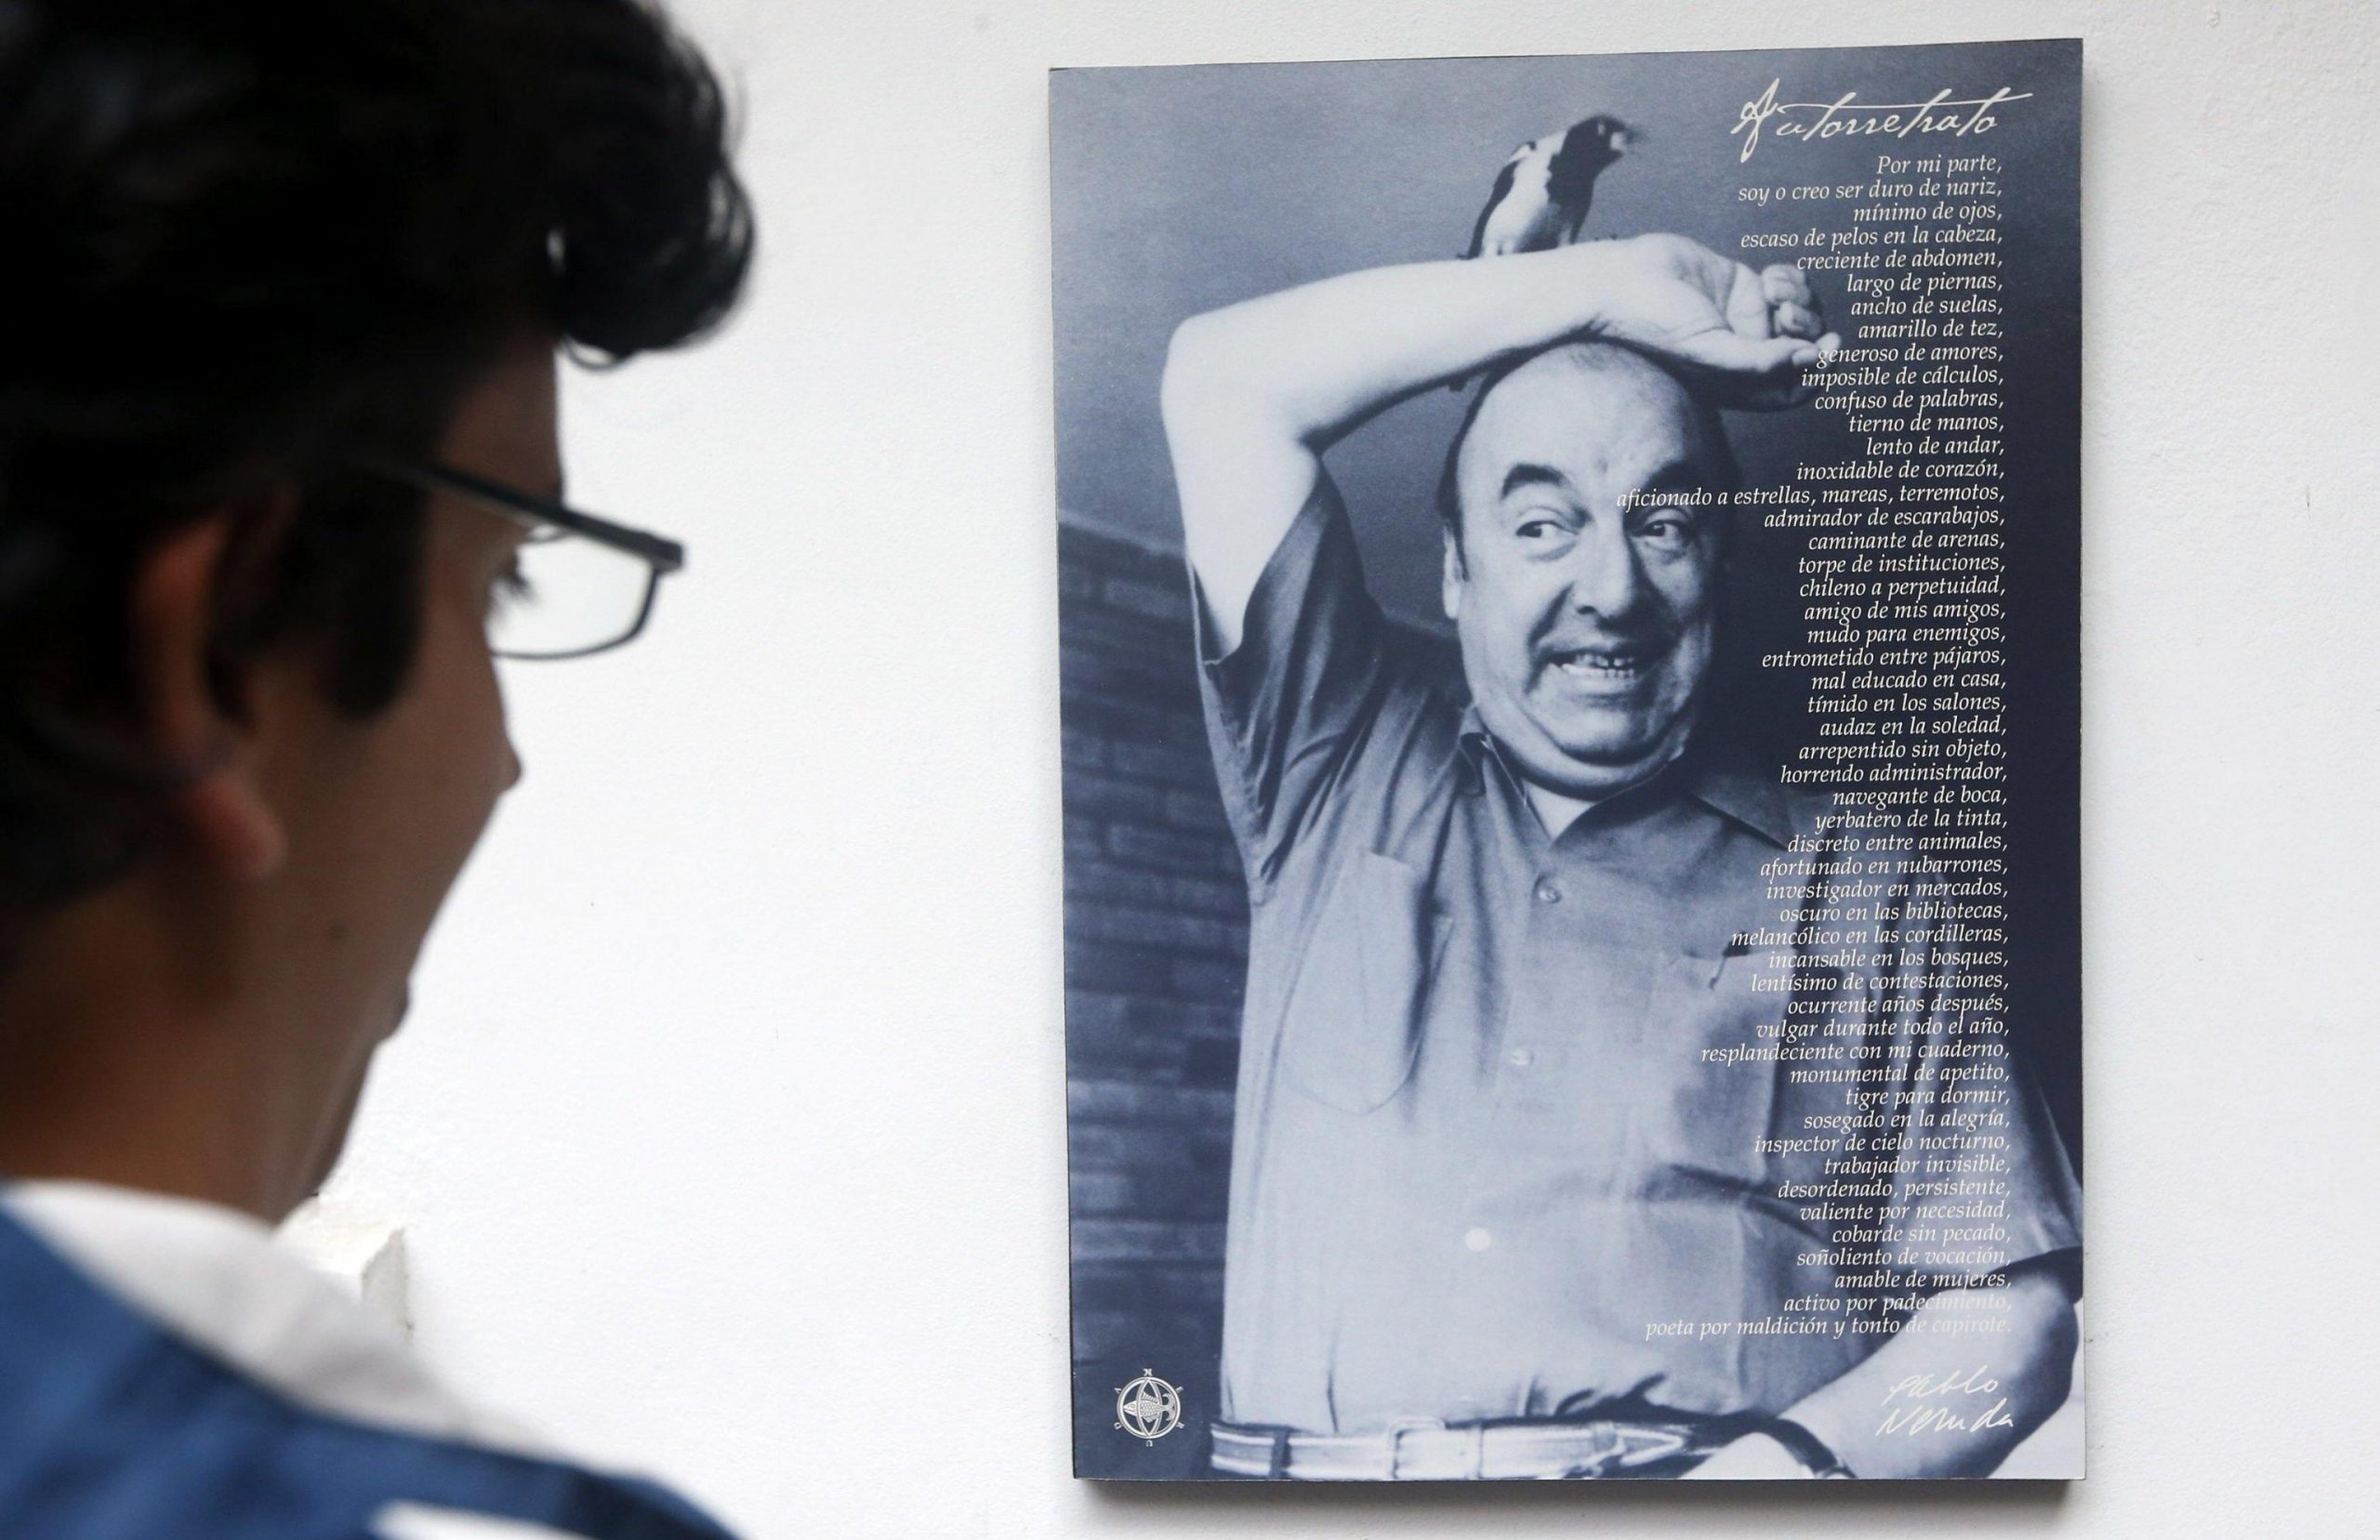 Pablo Neruda: “Le analisi confermano la morte per avvelenamento”